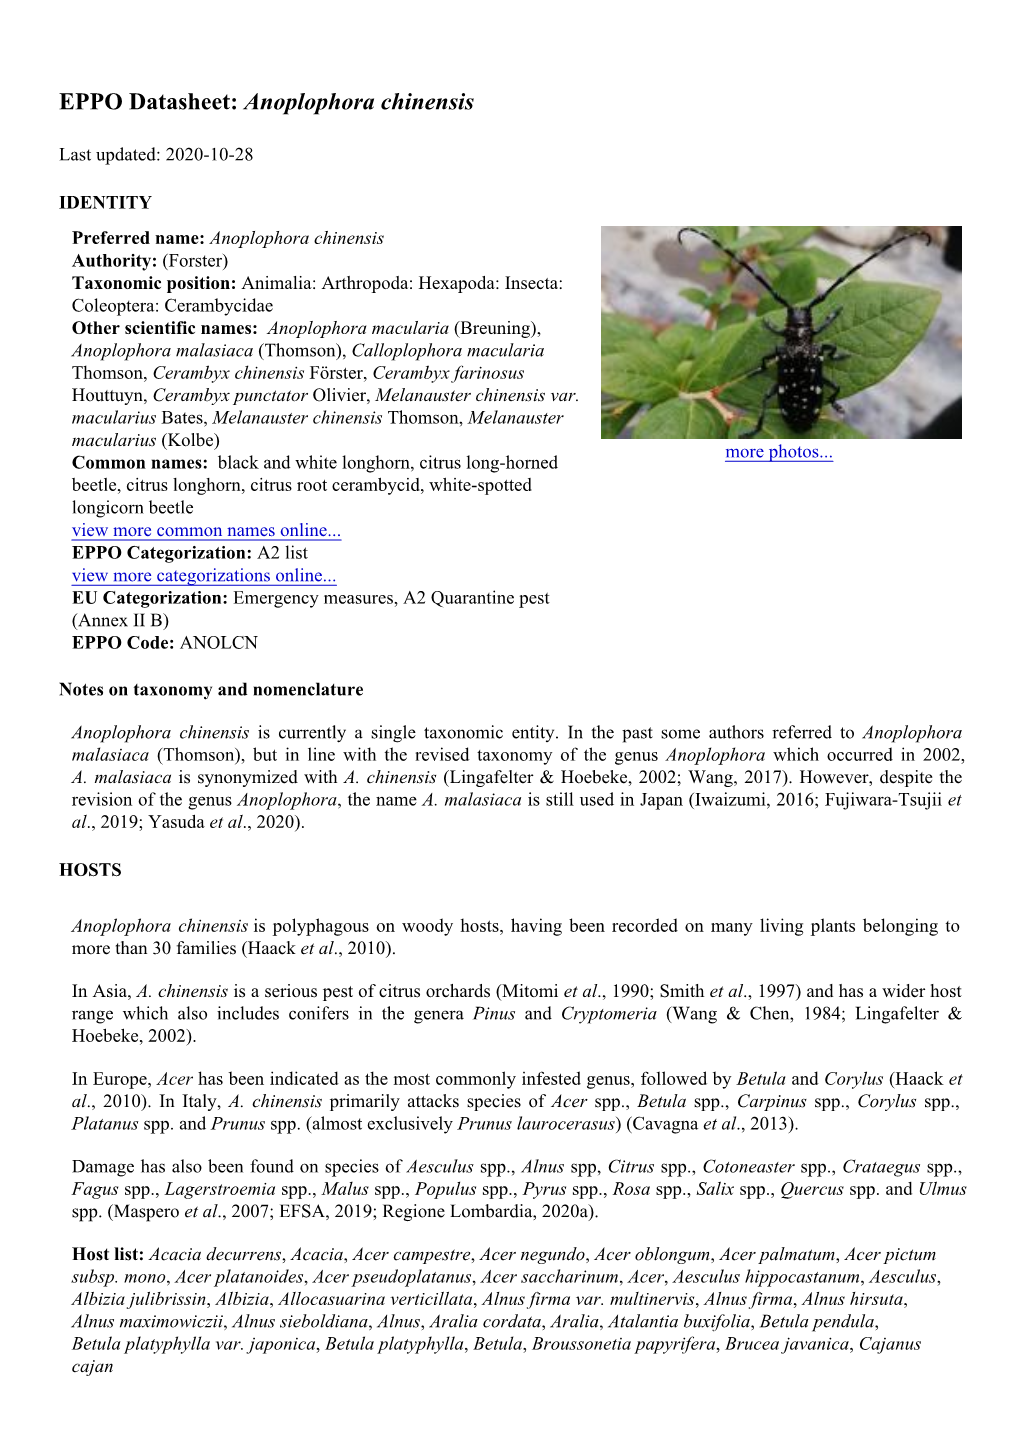 EPPO Datasheet: Anoplophora Chinensis